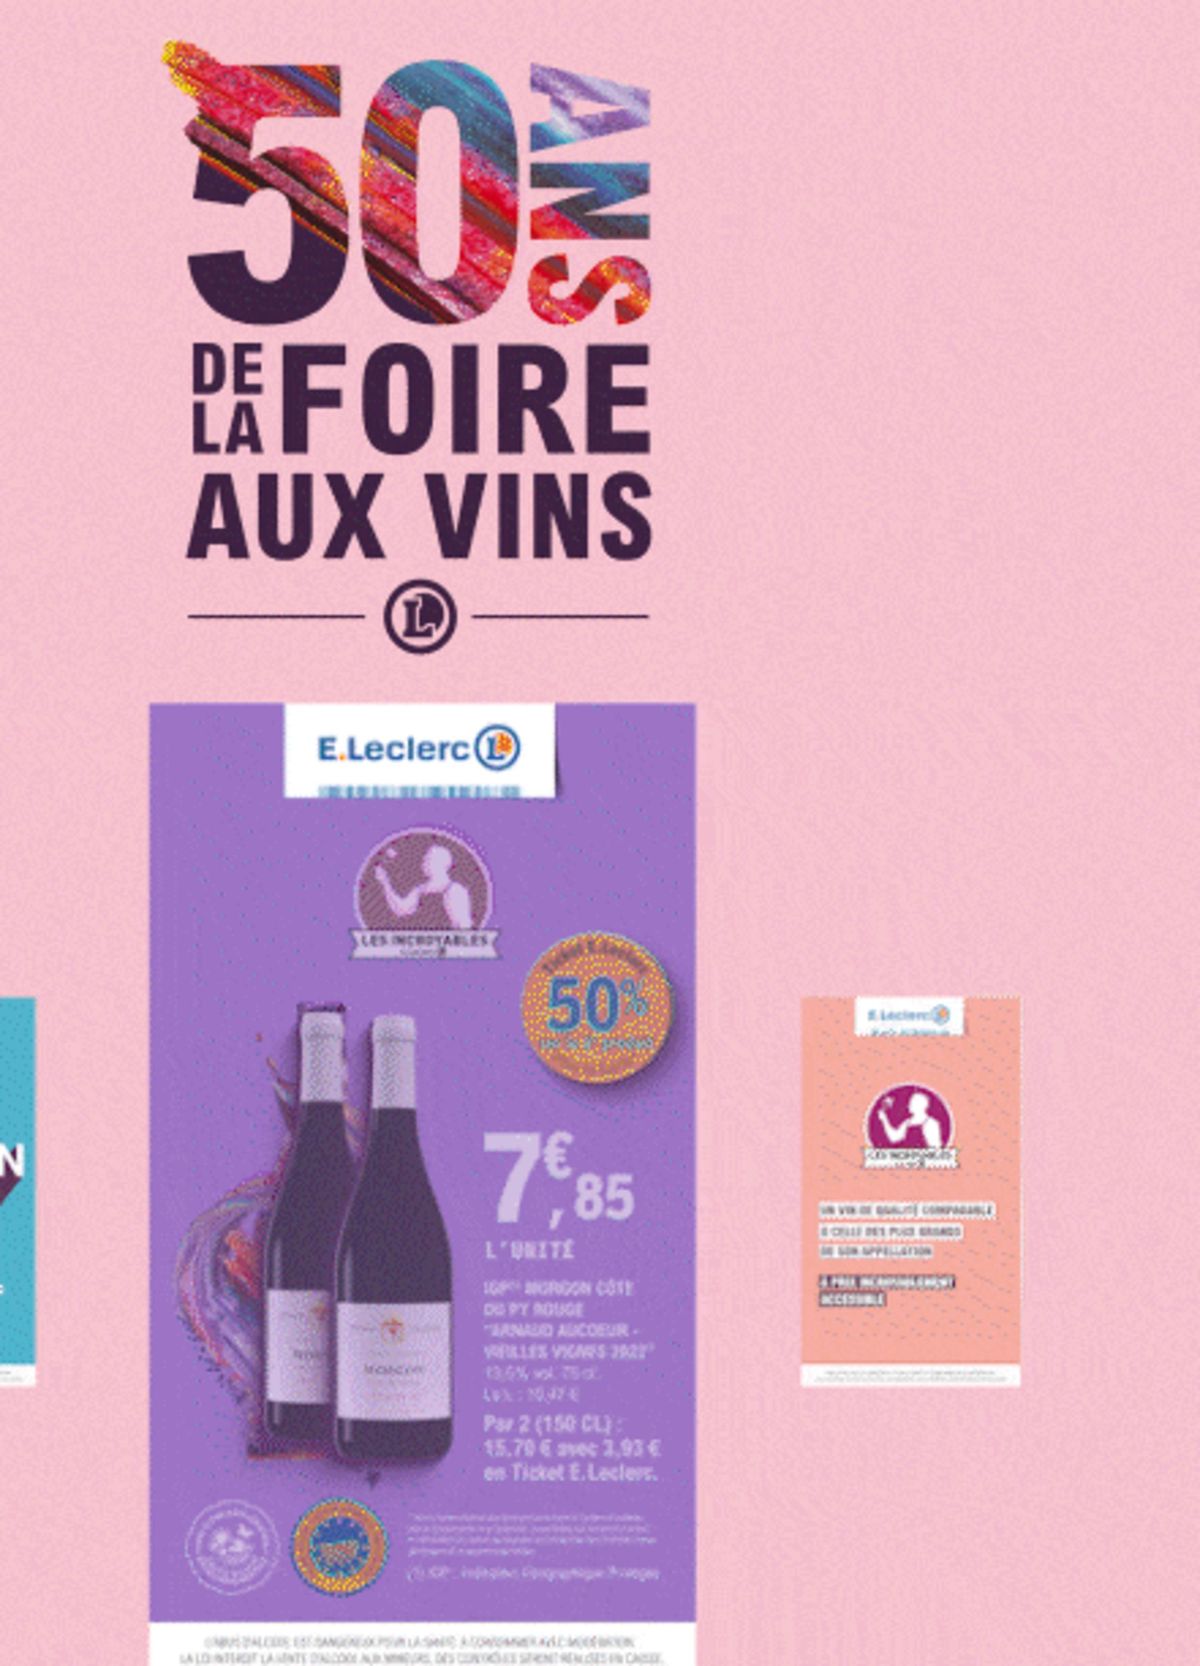 Catalogue Foire Aux Vins - Mixte, page 00368